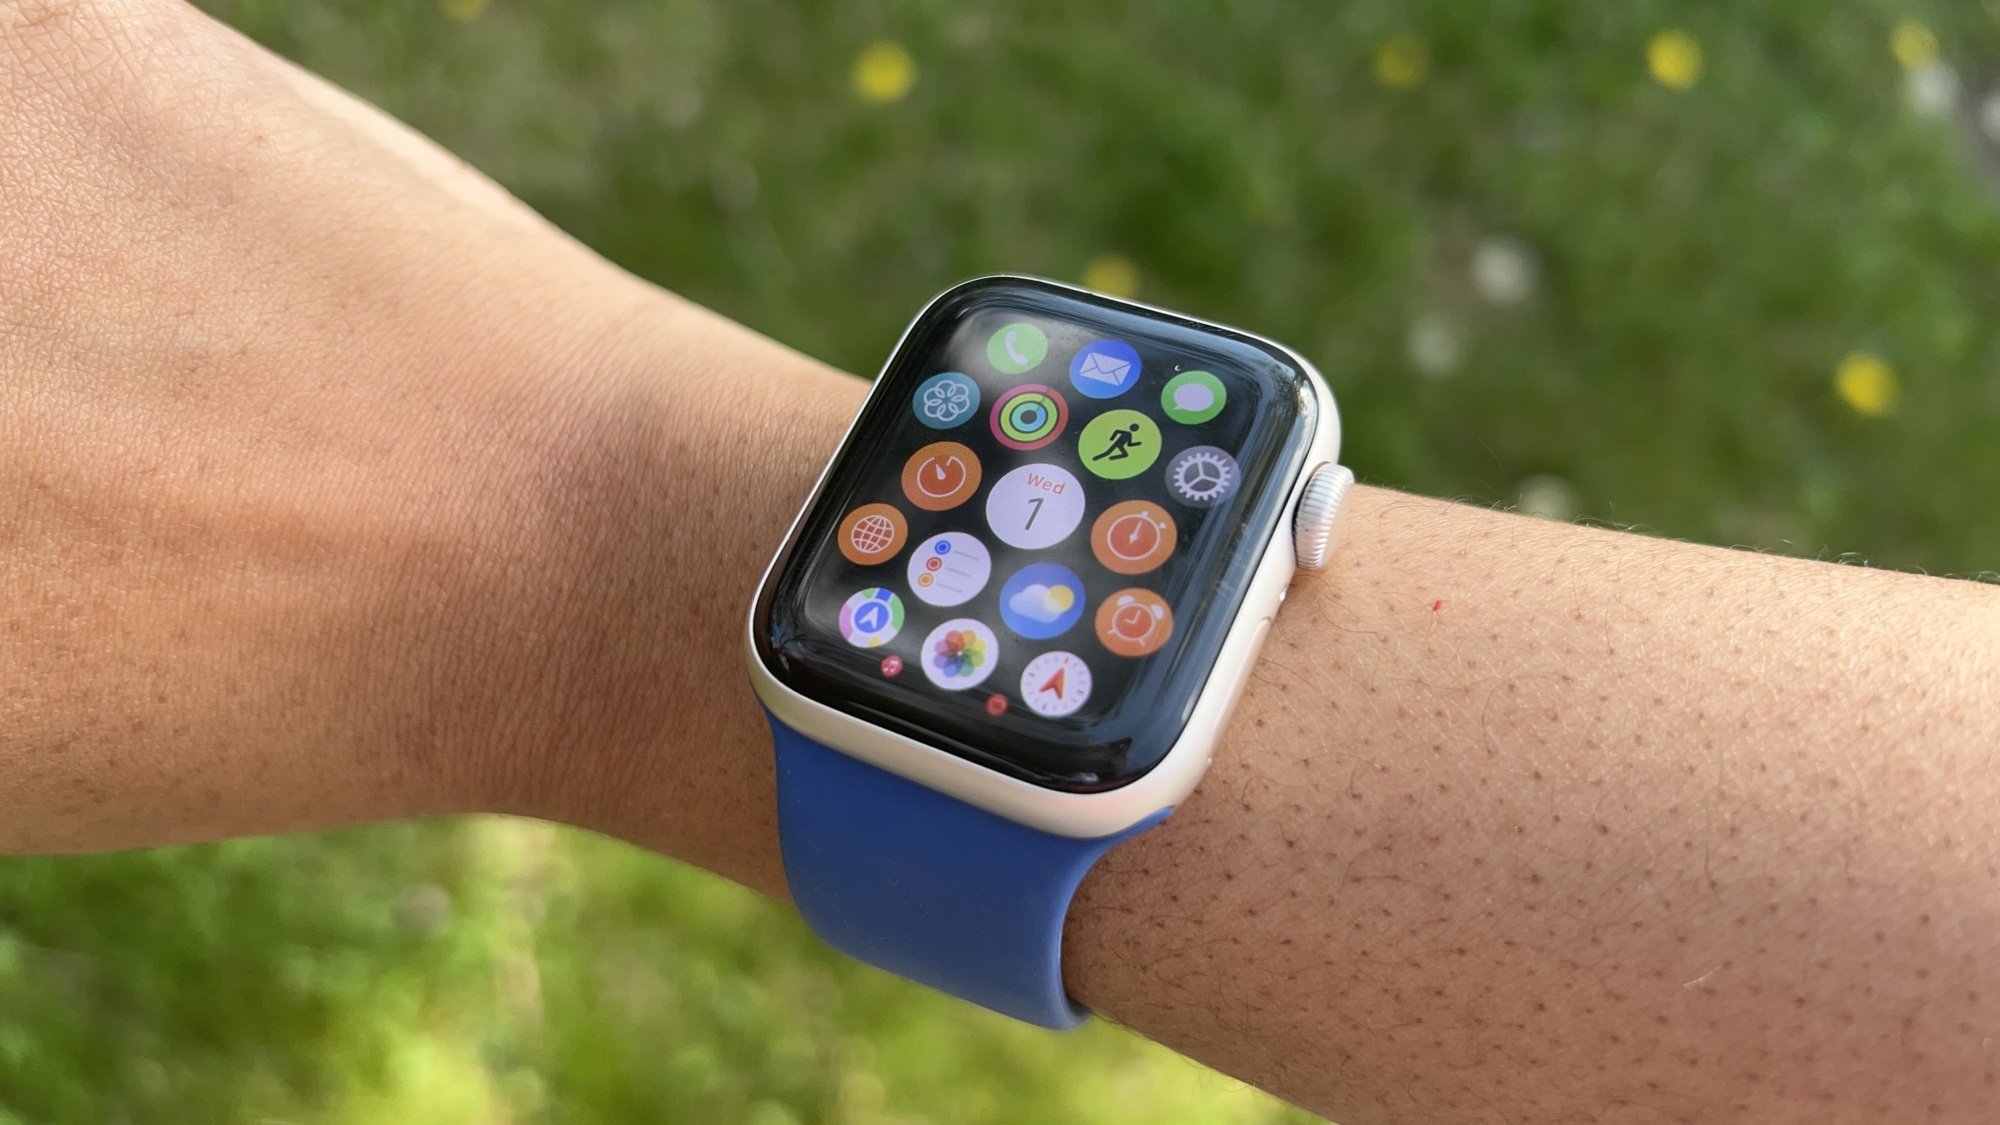 Apple Watch SE 2 on a woman's wrist